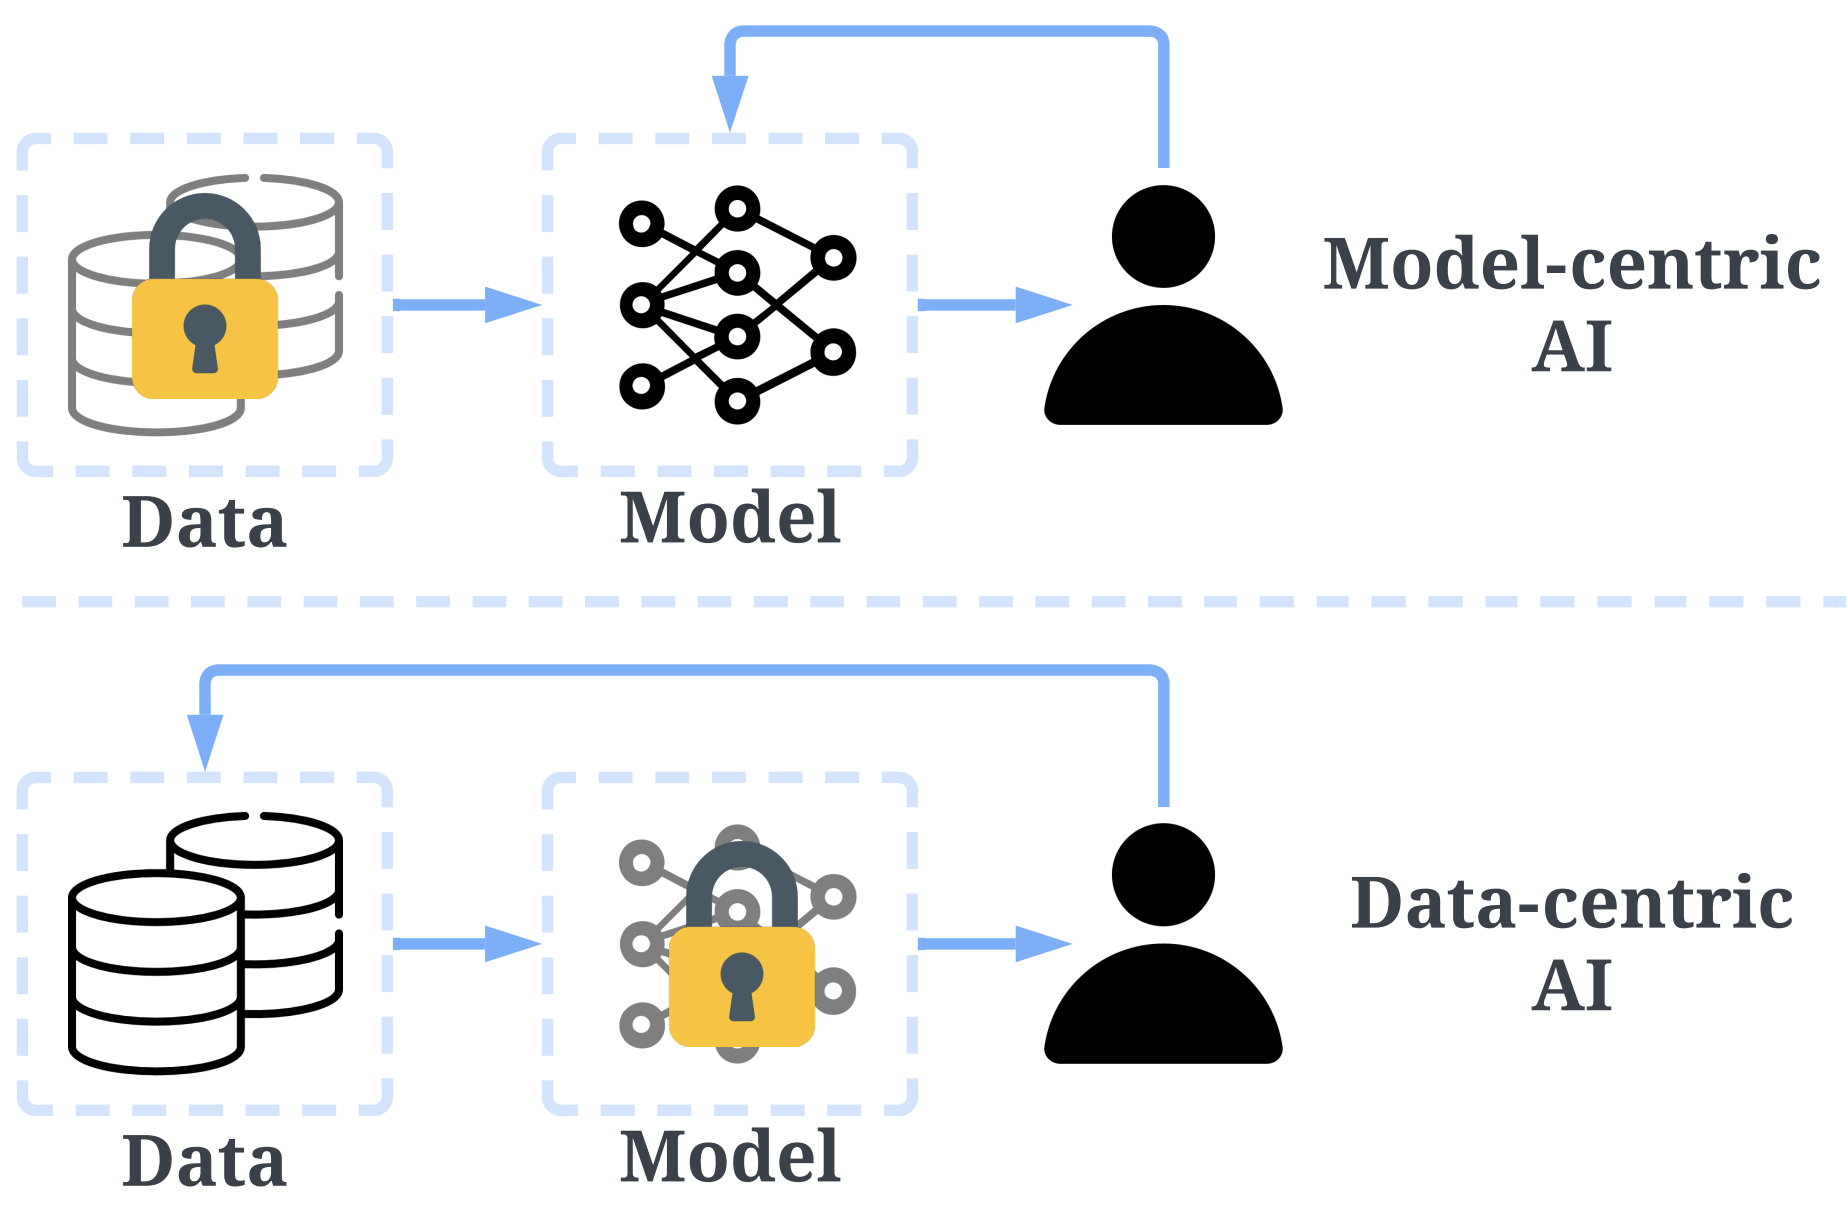 Data-centric AI vs Model-centric AI